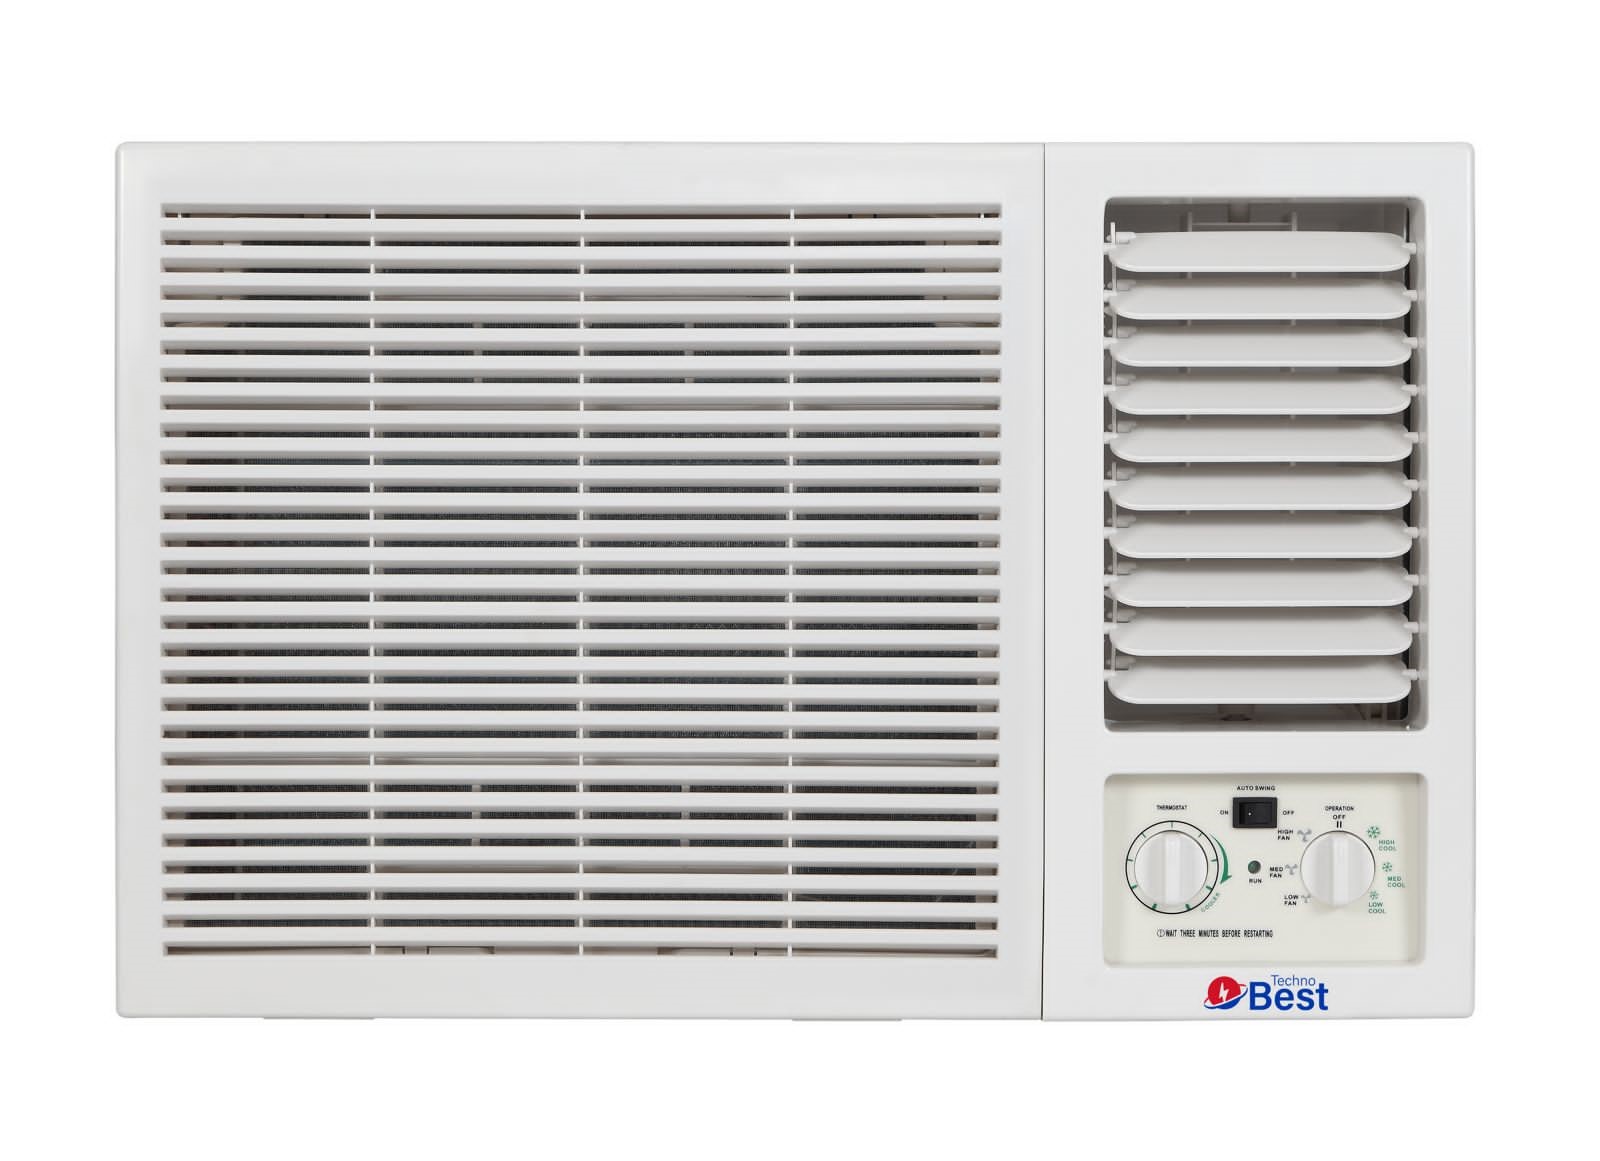 TECHNO BEST Window Air Conditioner, 20000 BTU, Hot/Cold, Quiet Sound - BWAC-024H